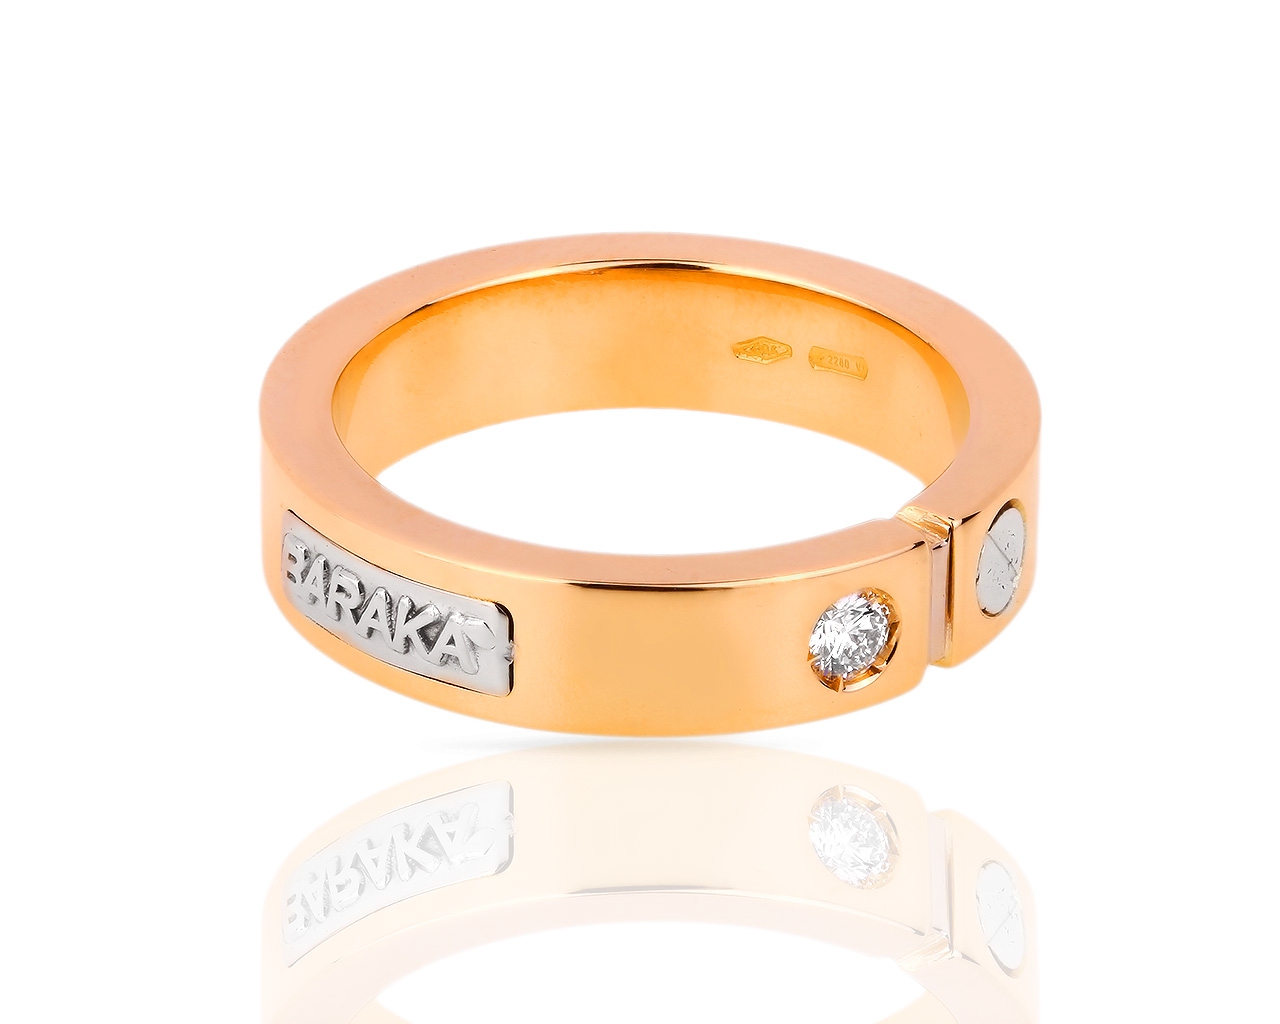 Оригинальное золотое кольцо с бриллиантом 0.08ct Baraka 020618/8